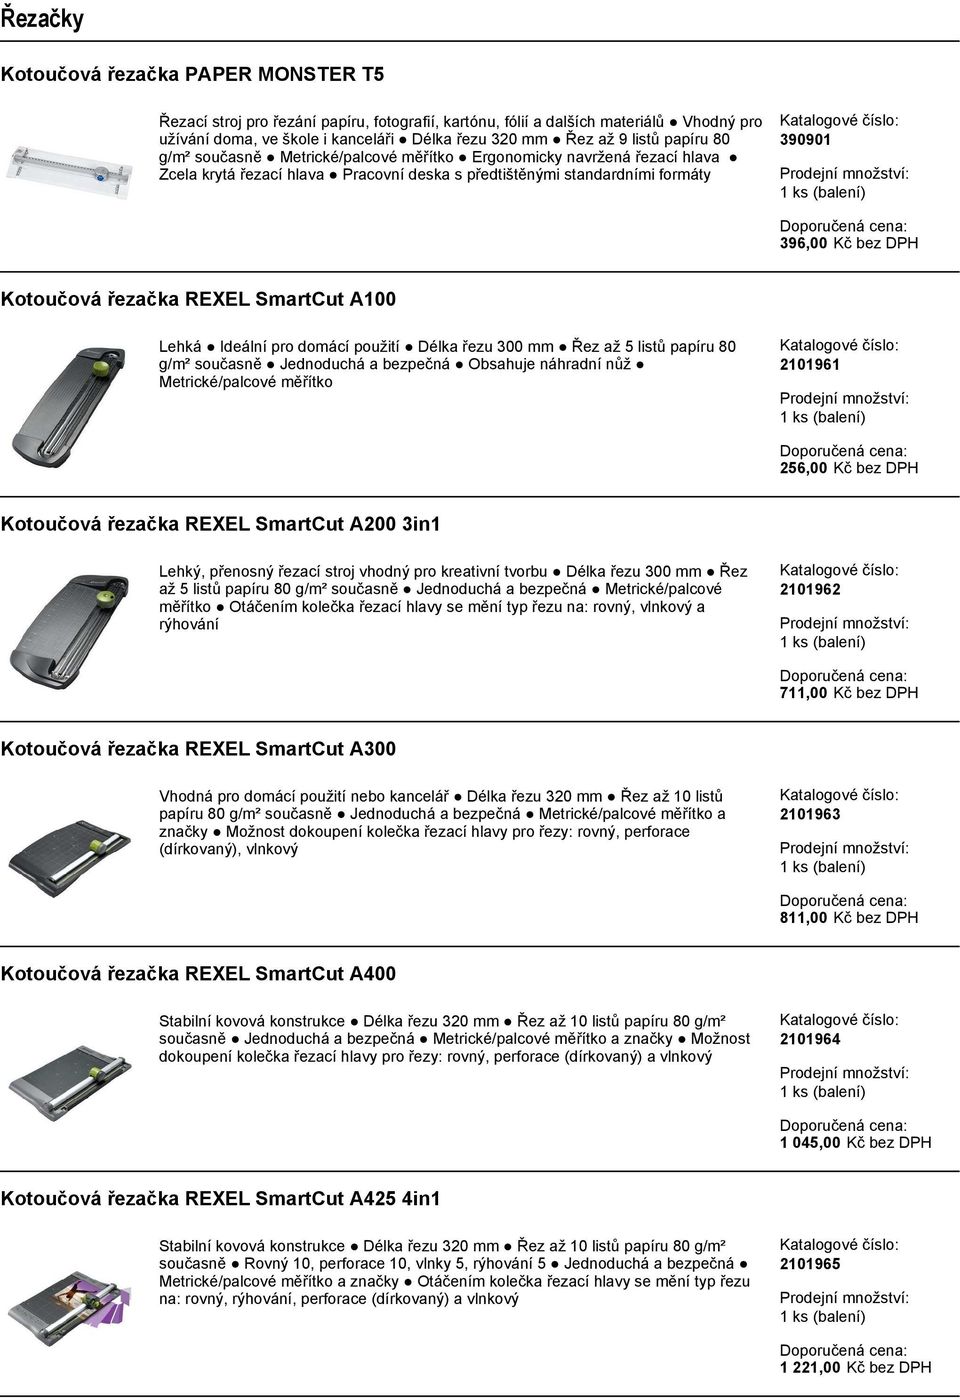 REXEL SmartCut A100 Lehká Ideální pro domácí použití Délka řezu 300 mm Řez až 5 listů papíru 80 g/m² současně Jednoduchá a bezpečná Obsahuje náhradní nůž Metrické/palcové měřítko 2101961 256,00 Kč